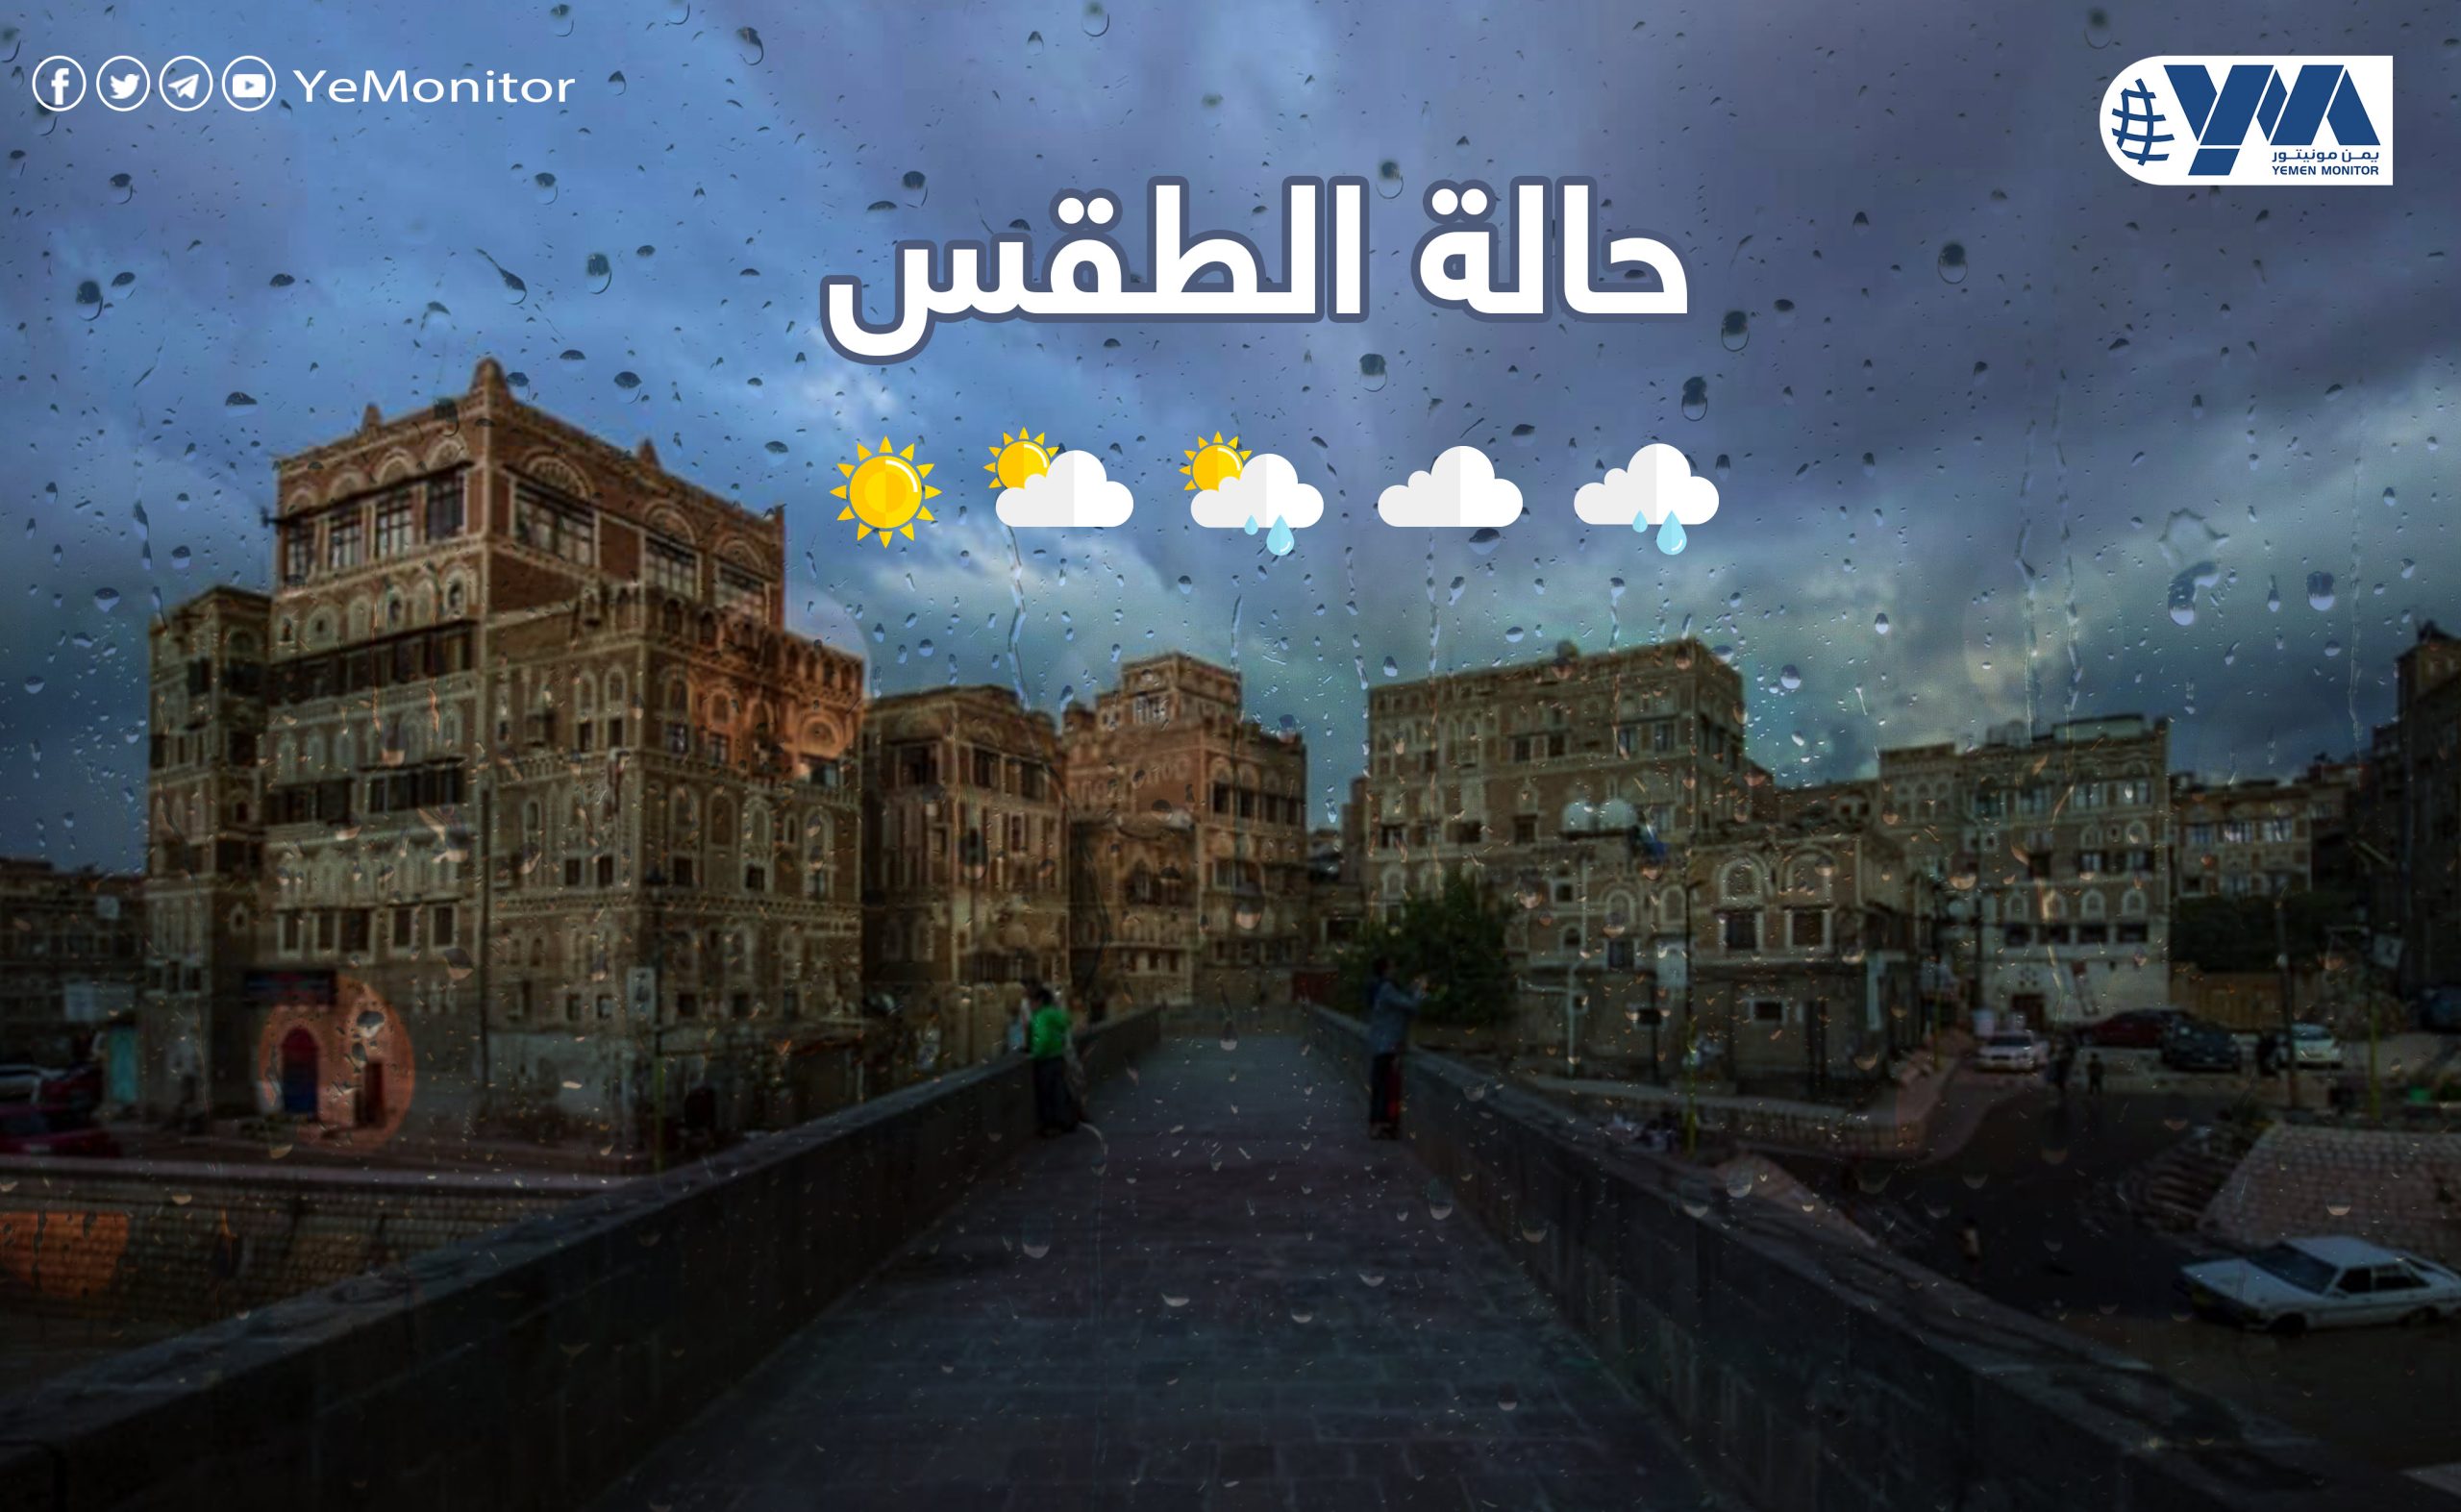 “الأرصاد اليمني” يتوقع استمرار هطول الأمطار ويحذر من تدني الرؤية بسبب الضباب